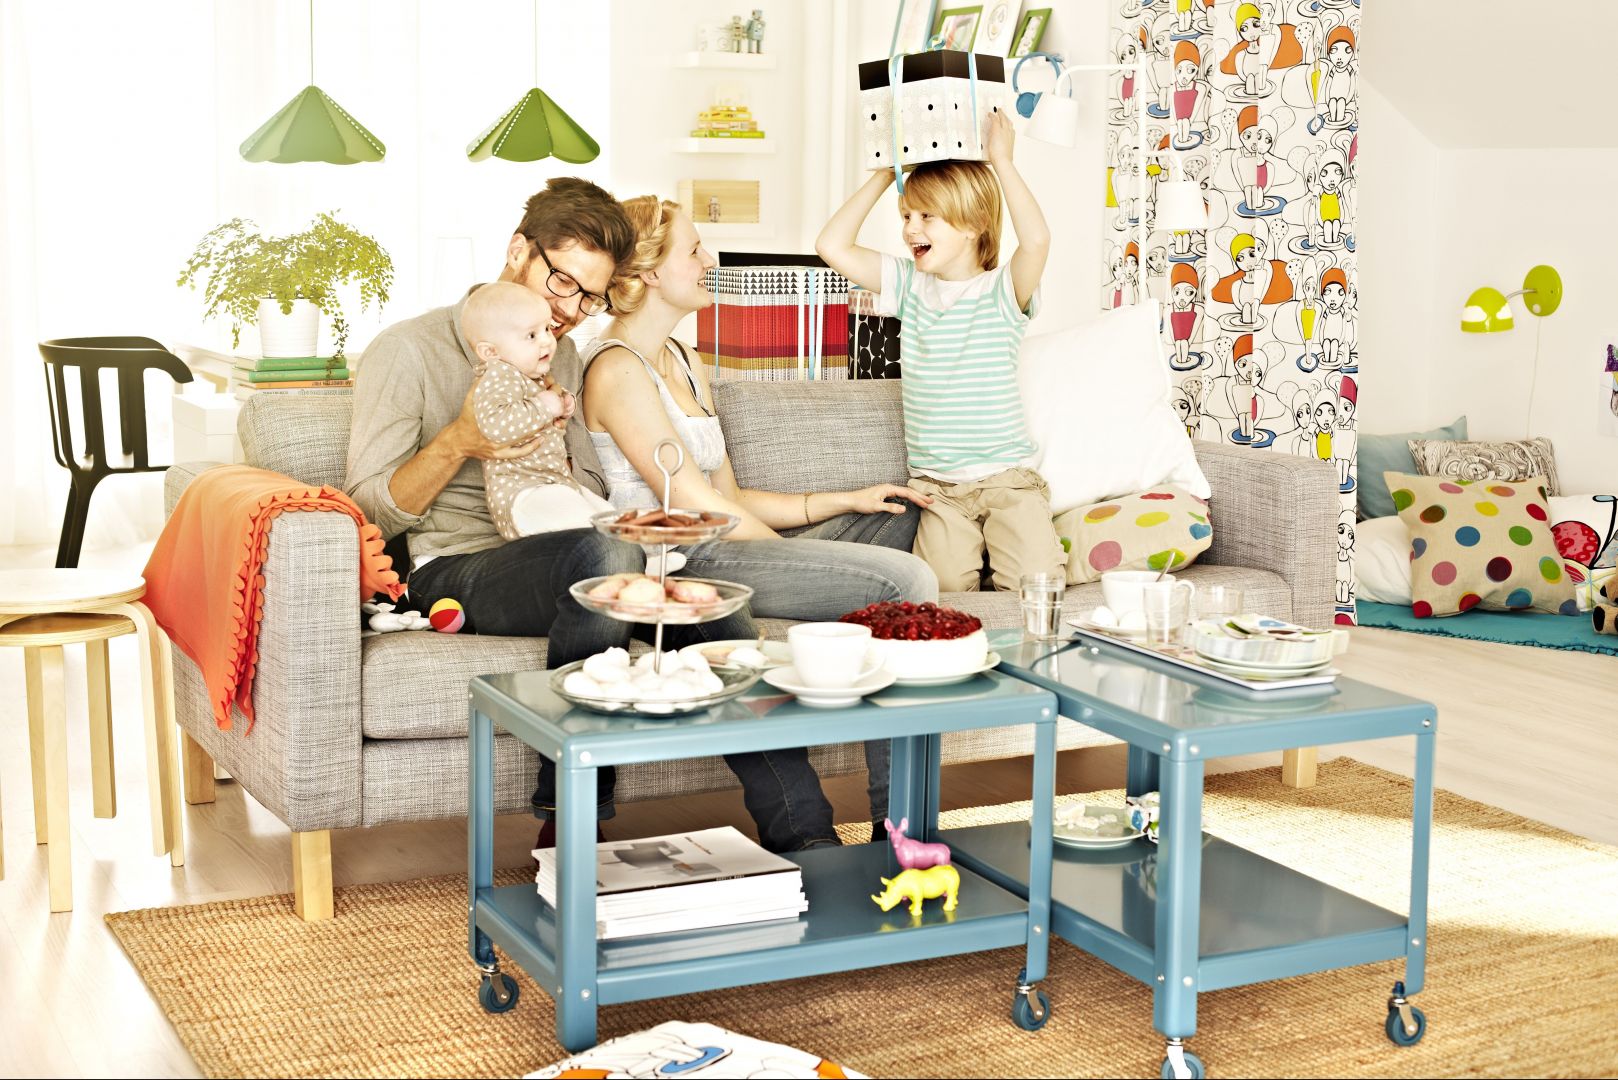 Oprócz komfortu, jakości i ponadczasowego wyglądu, seria KARLSTAD daje również wiele wyborów. Fotel można połączyć z sofą i szezlongiem (albo dwoma). Można nawet tworzyć własne kombinacje. Fot. IKEA